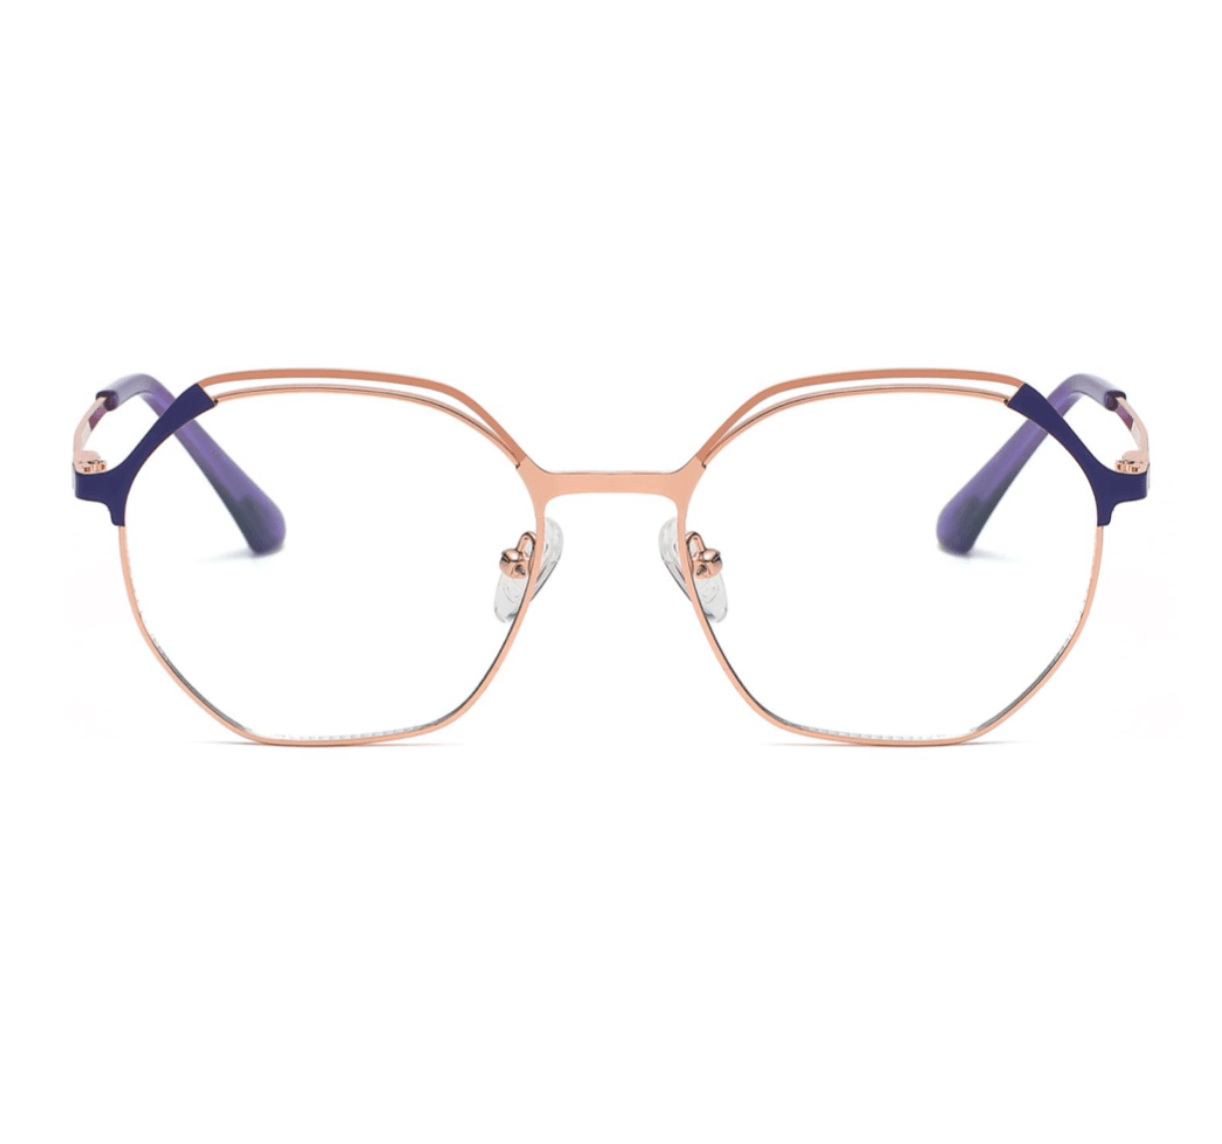 Custom design glasses frames